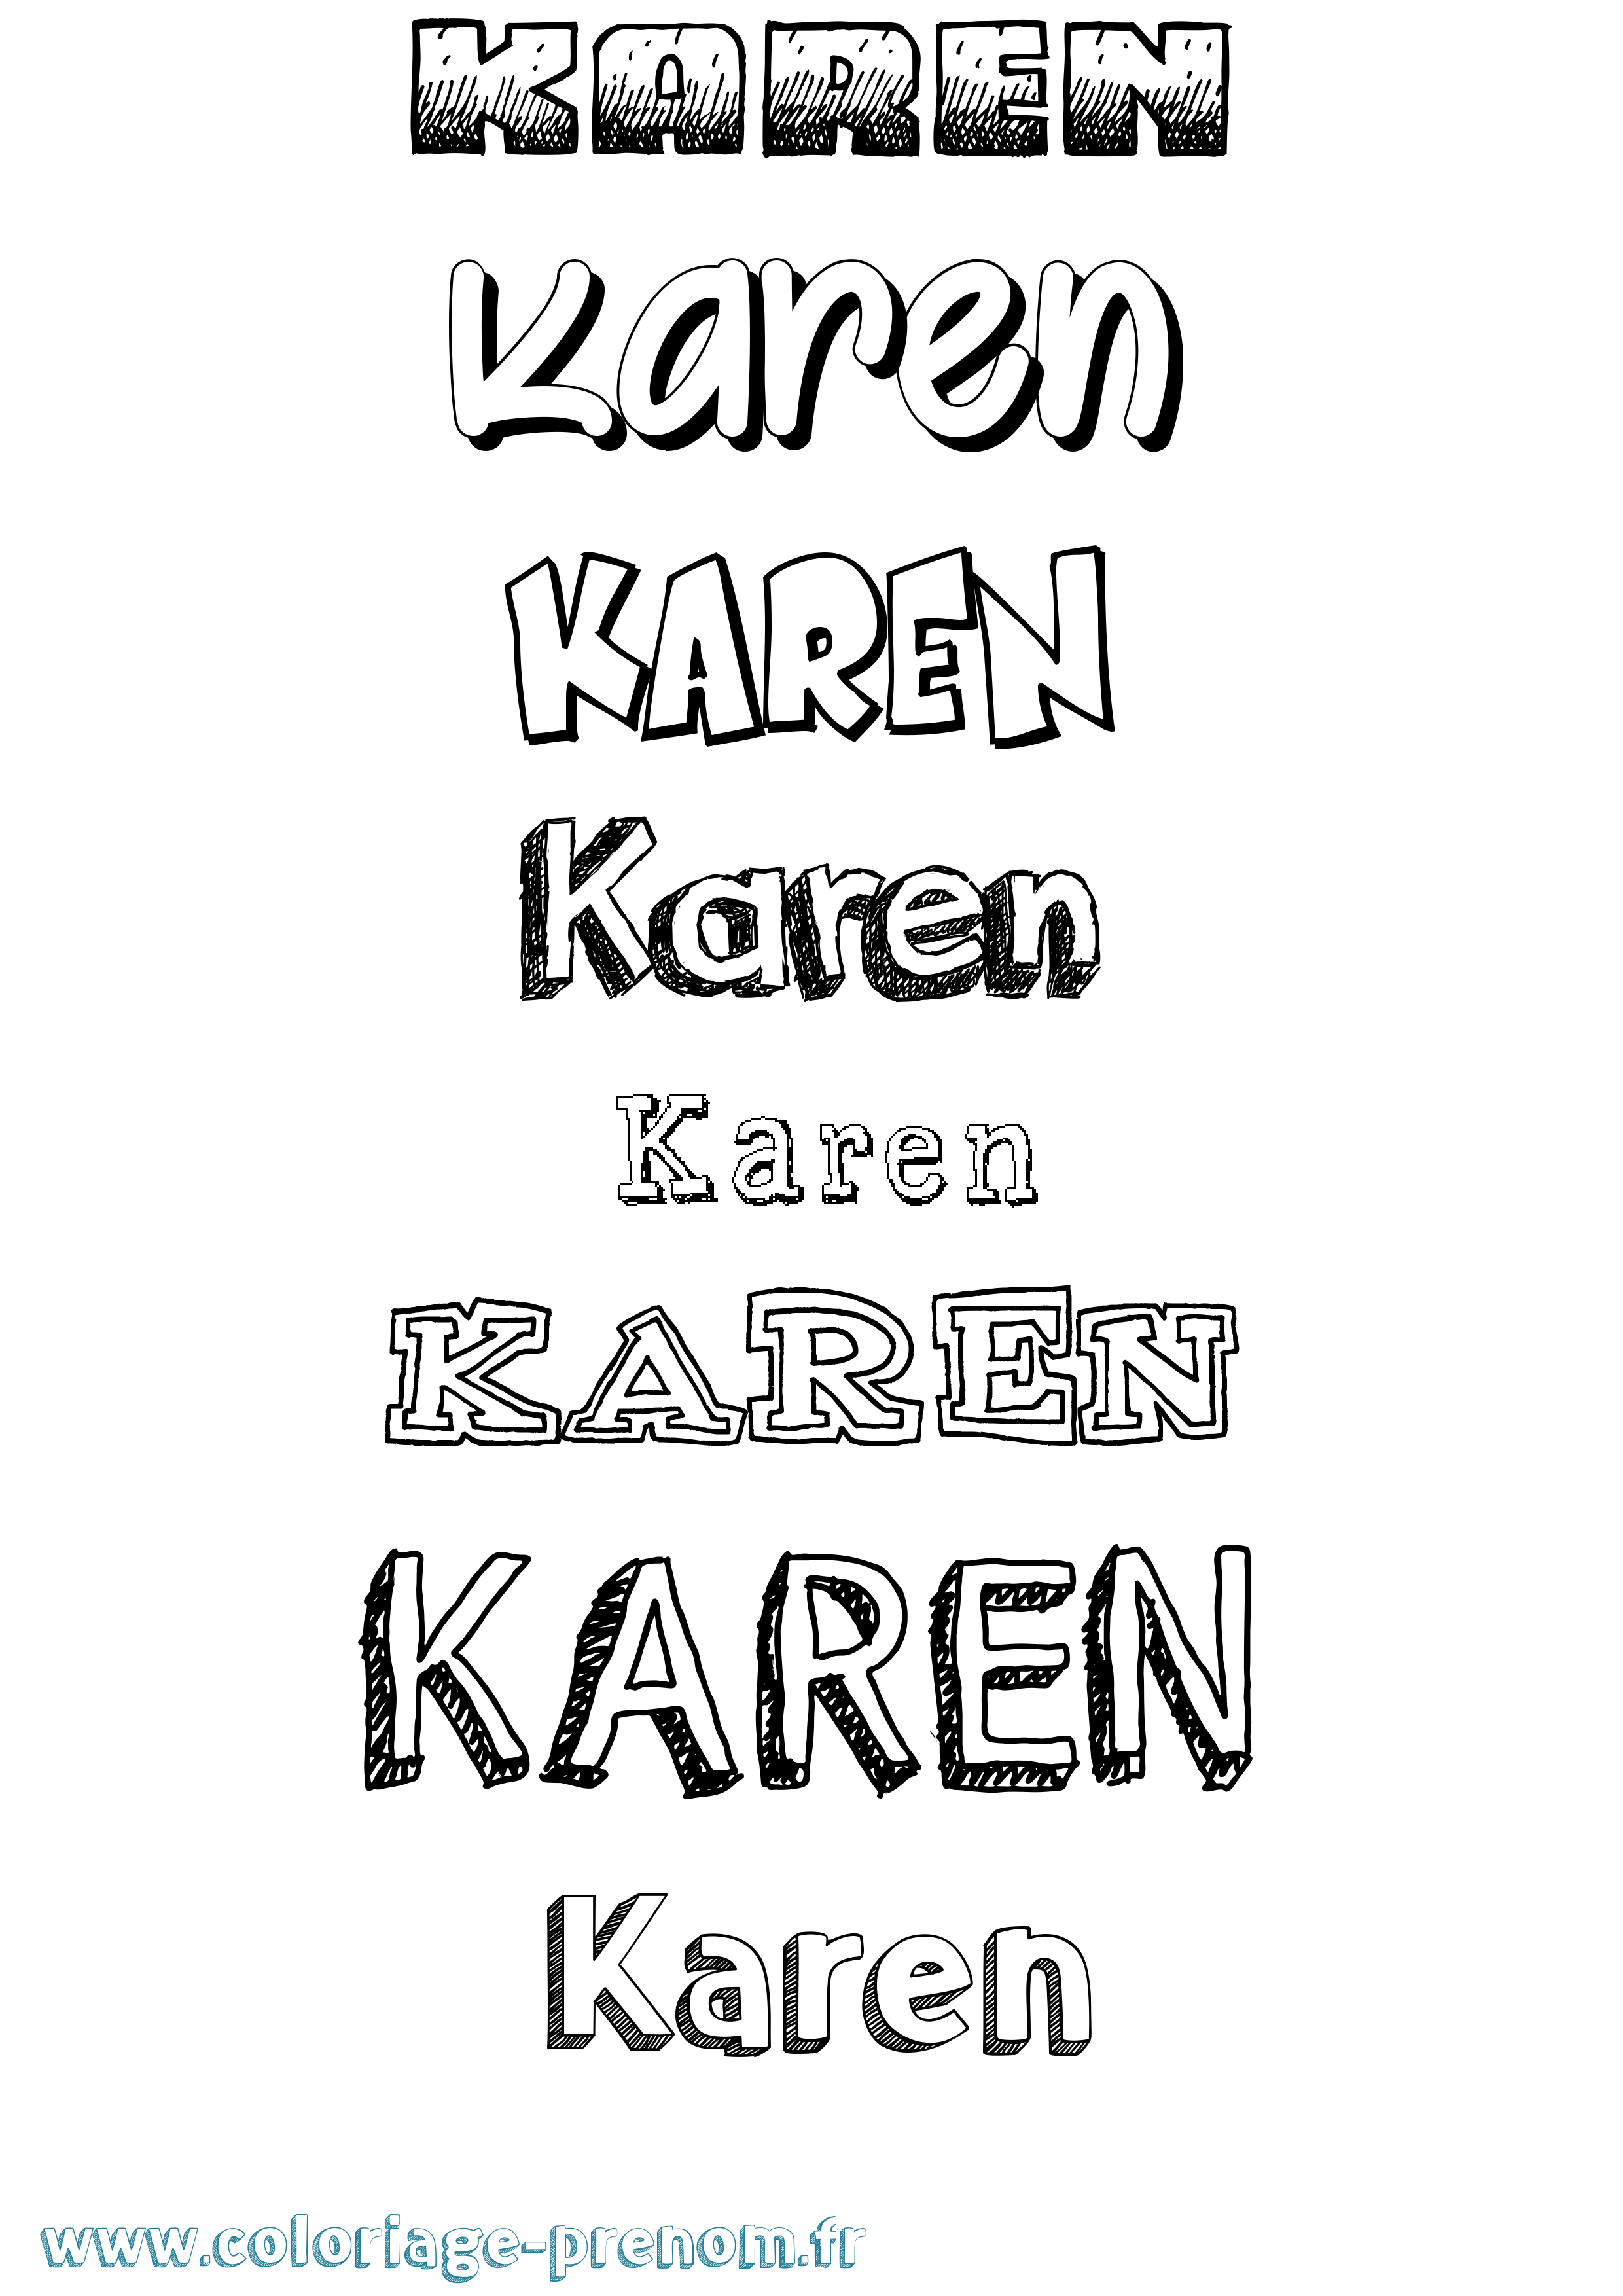 Coloriage prénom Karen